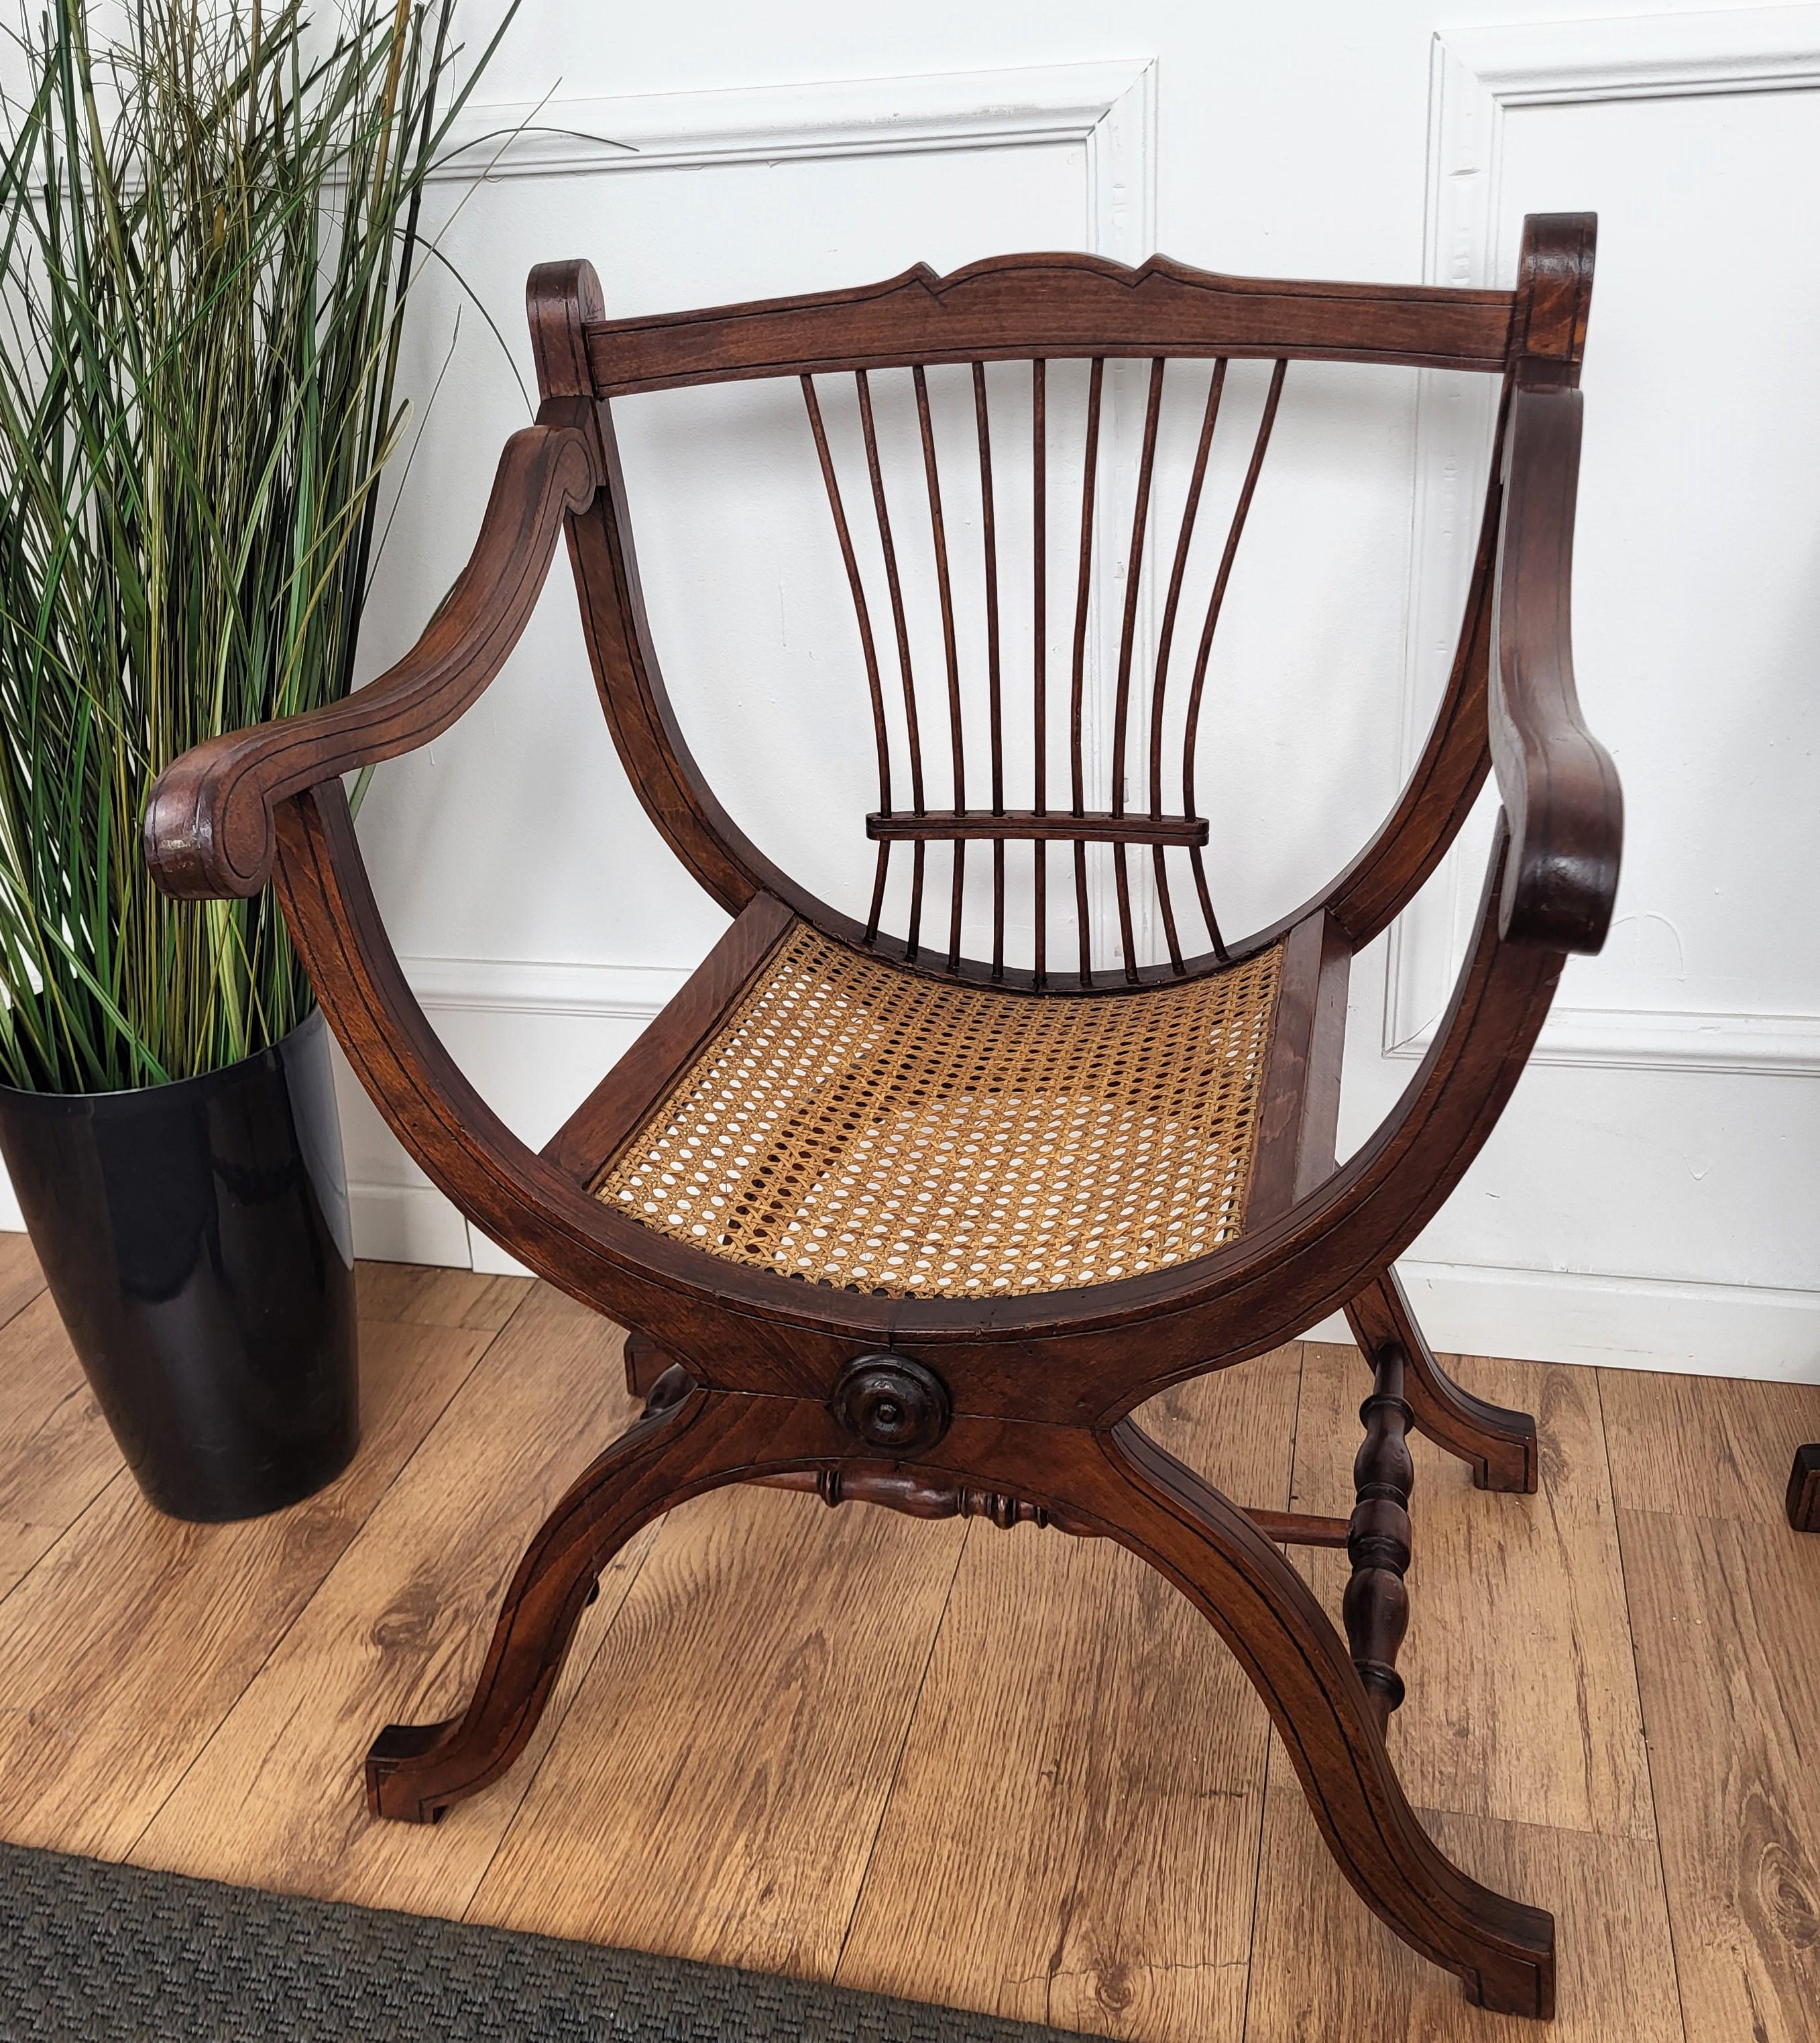 Ein schöner und eleganter italienischer Beistellstuhl aus Holz und Schilfrohr von hervorragender Qualität mit ausgezeichneten Profilschnitzereien und Detaildekoren. Ein Savonarola-Design mit Lattenrost-Dekor auf der Rückseite. Ein großartiges und